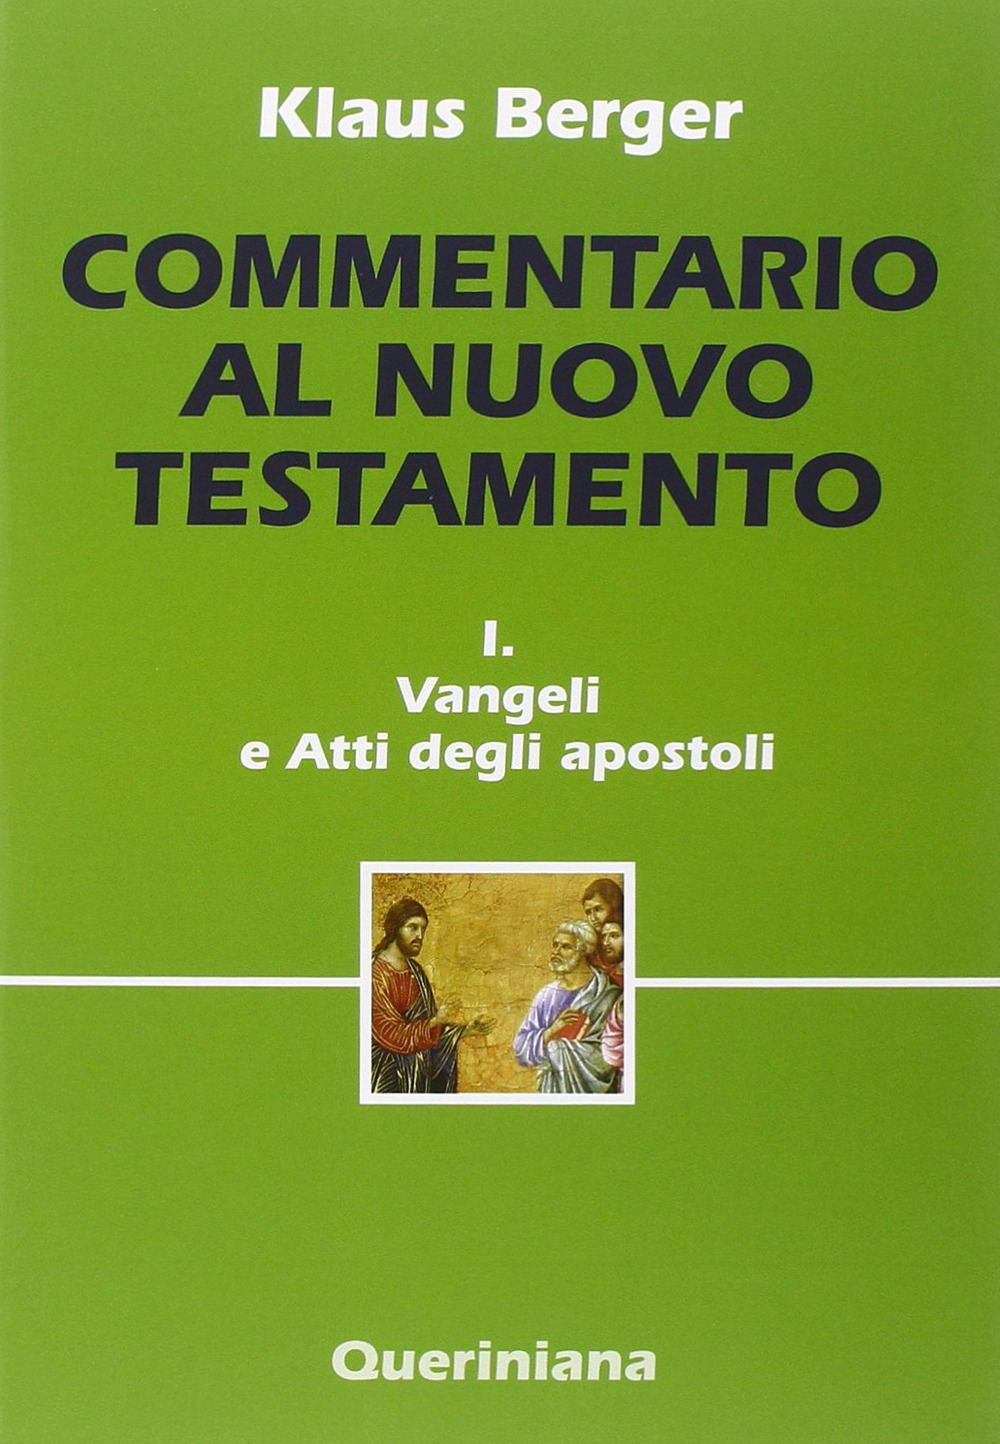 Image of Commentario al Nuovo Testamento. Vol. 1: Vangeli e Atti degli apostoli.